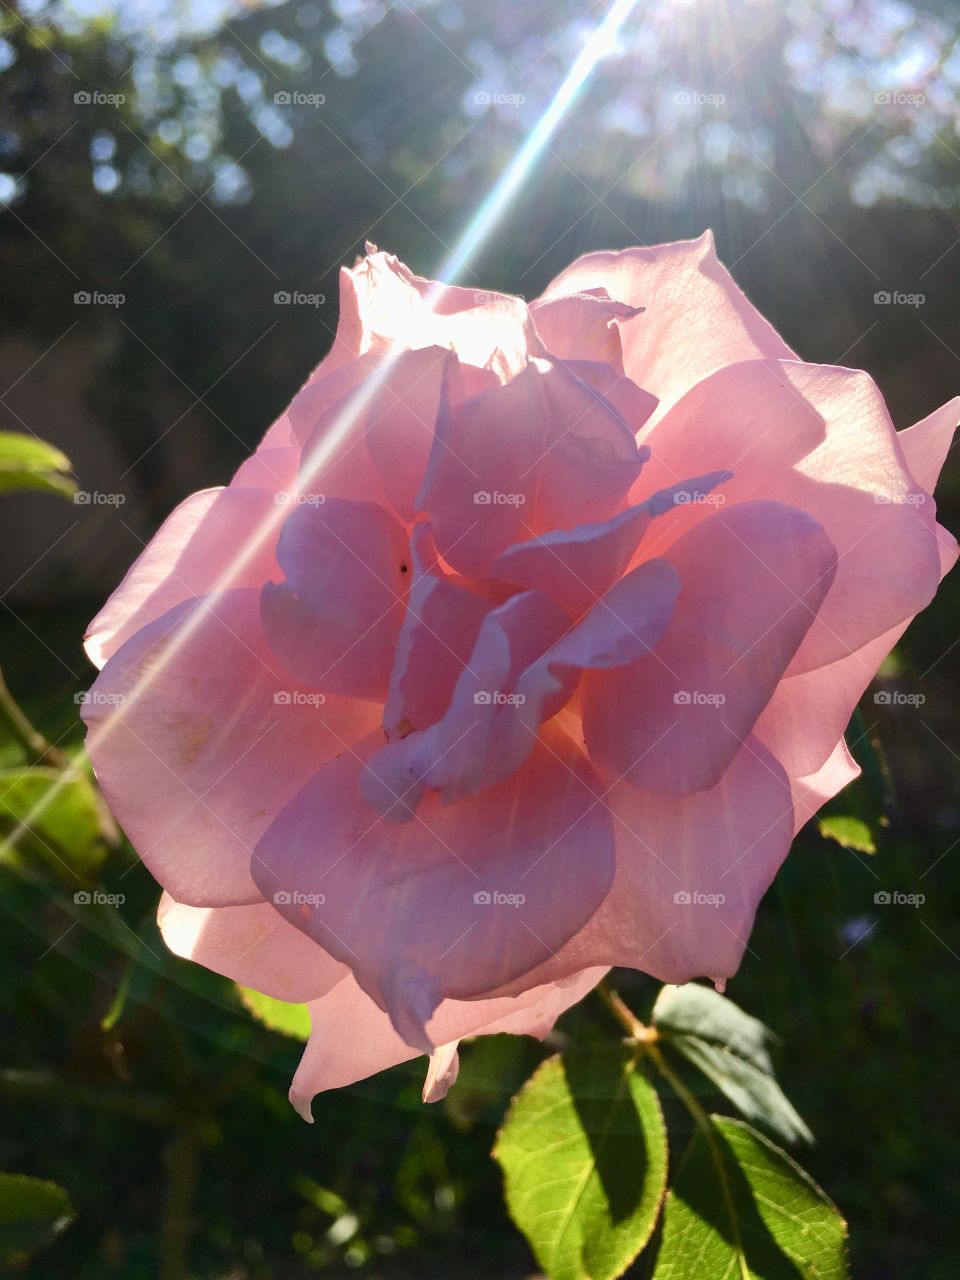 🌼#Flores do nosso #jardim, para alegrar e embelezar nosso dia!
Veja o brilho do #sol atravessando as #pétalas do botão da #roseira lilás.
🌹
#flor #flowers #flower #pétala #garden #natureza #nature #flora
#Jardinagem é nosso #hobby. #Fotografia idem.